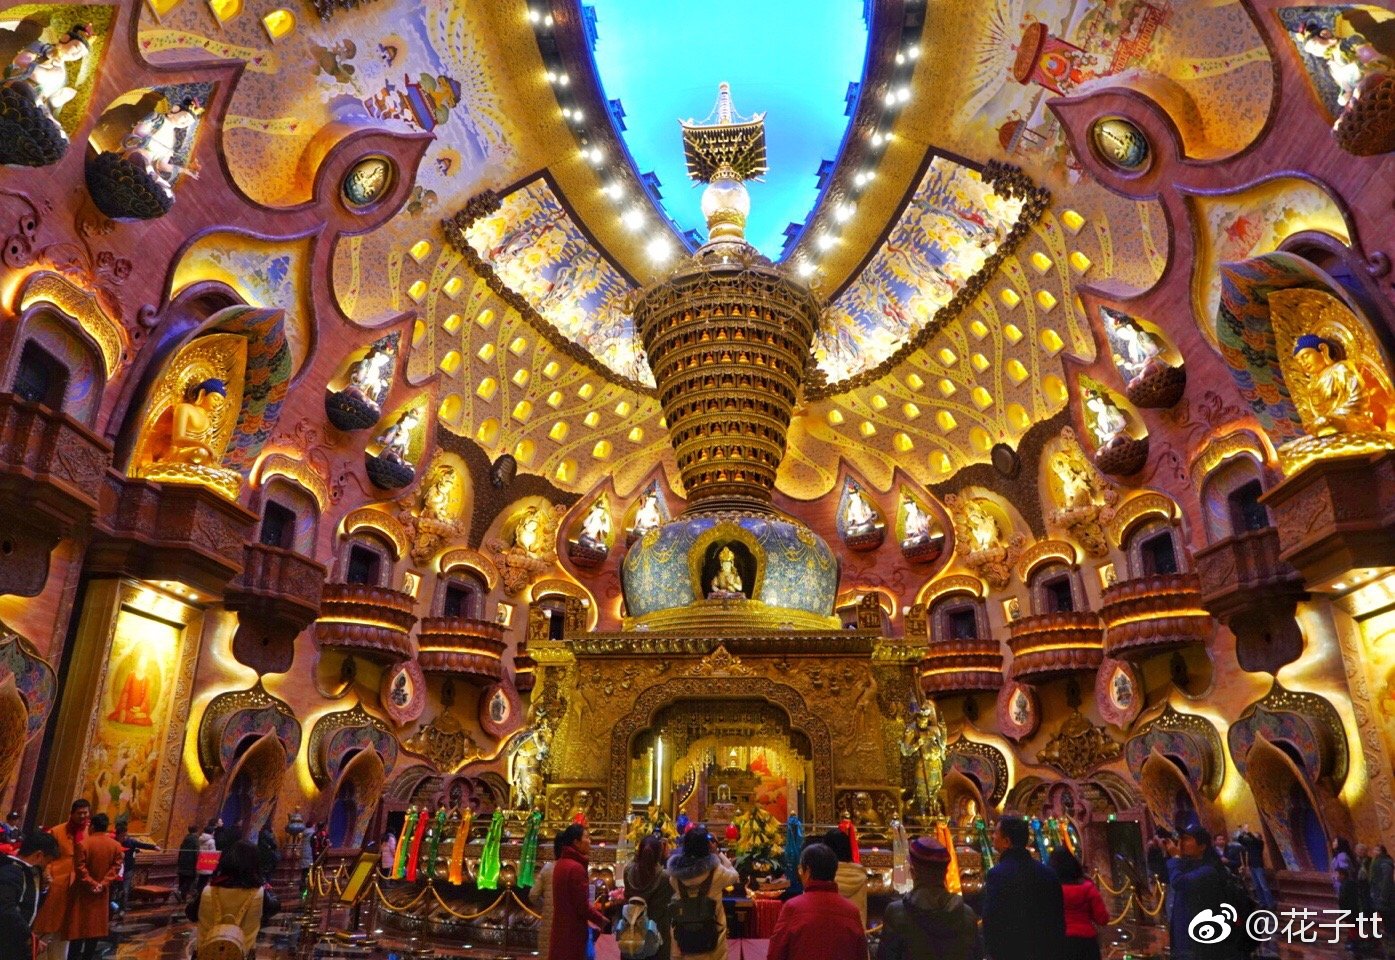 白马寺之缅甸风格佛殿-中关村在线摄影论坛